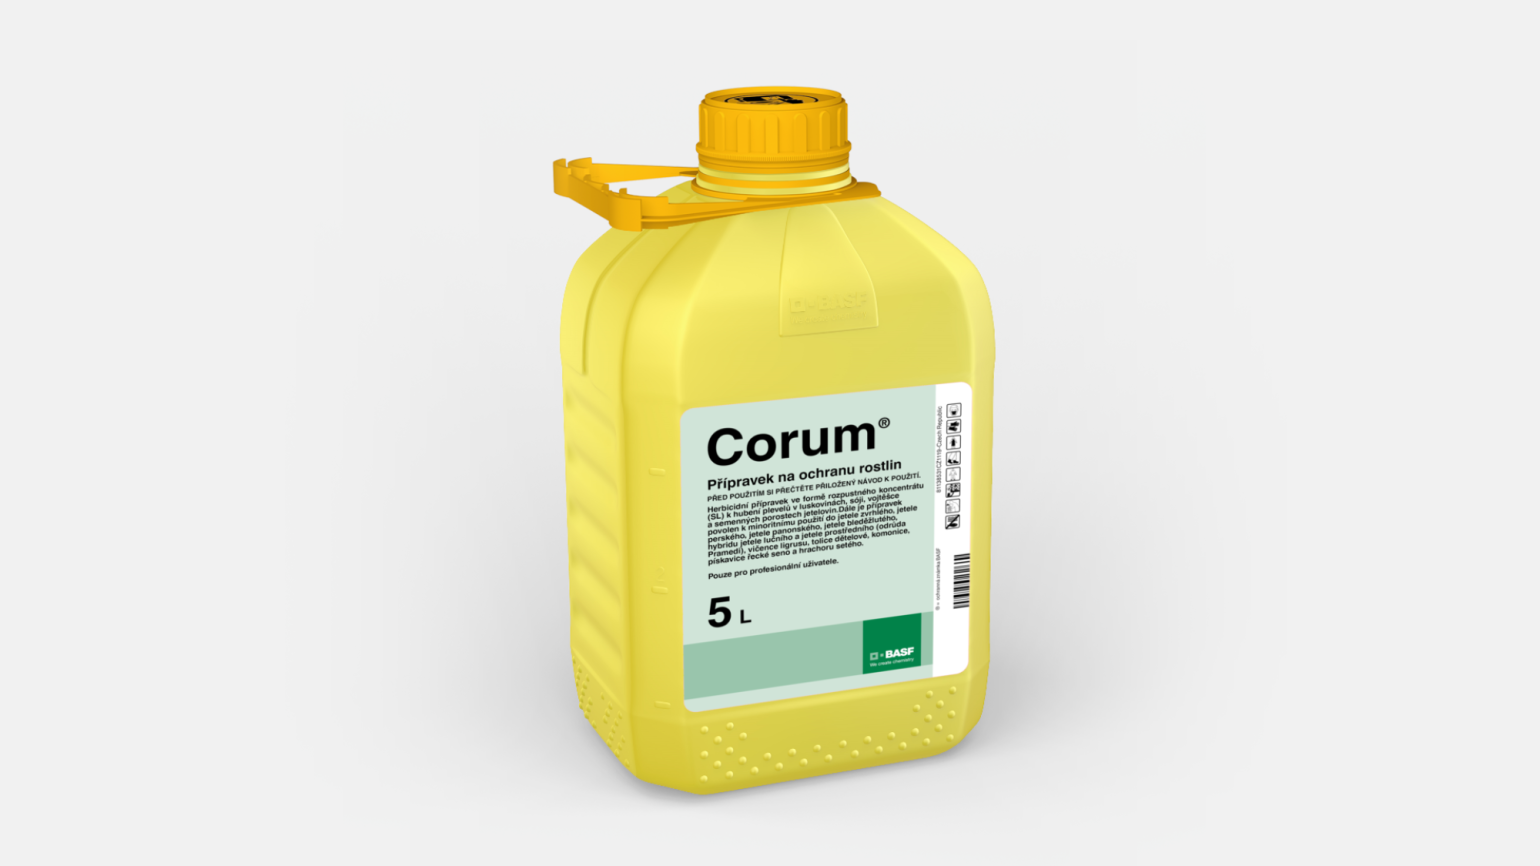 Corum 5l